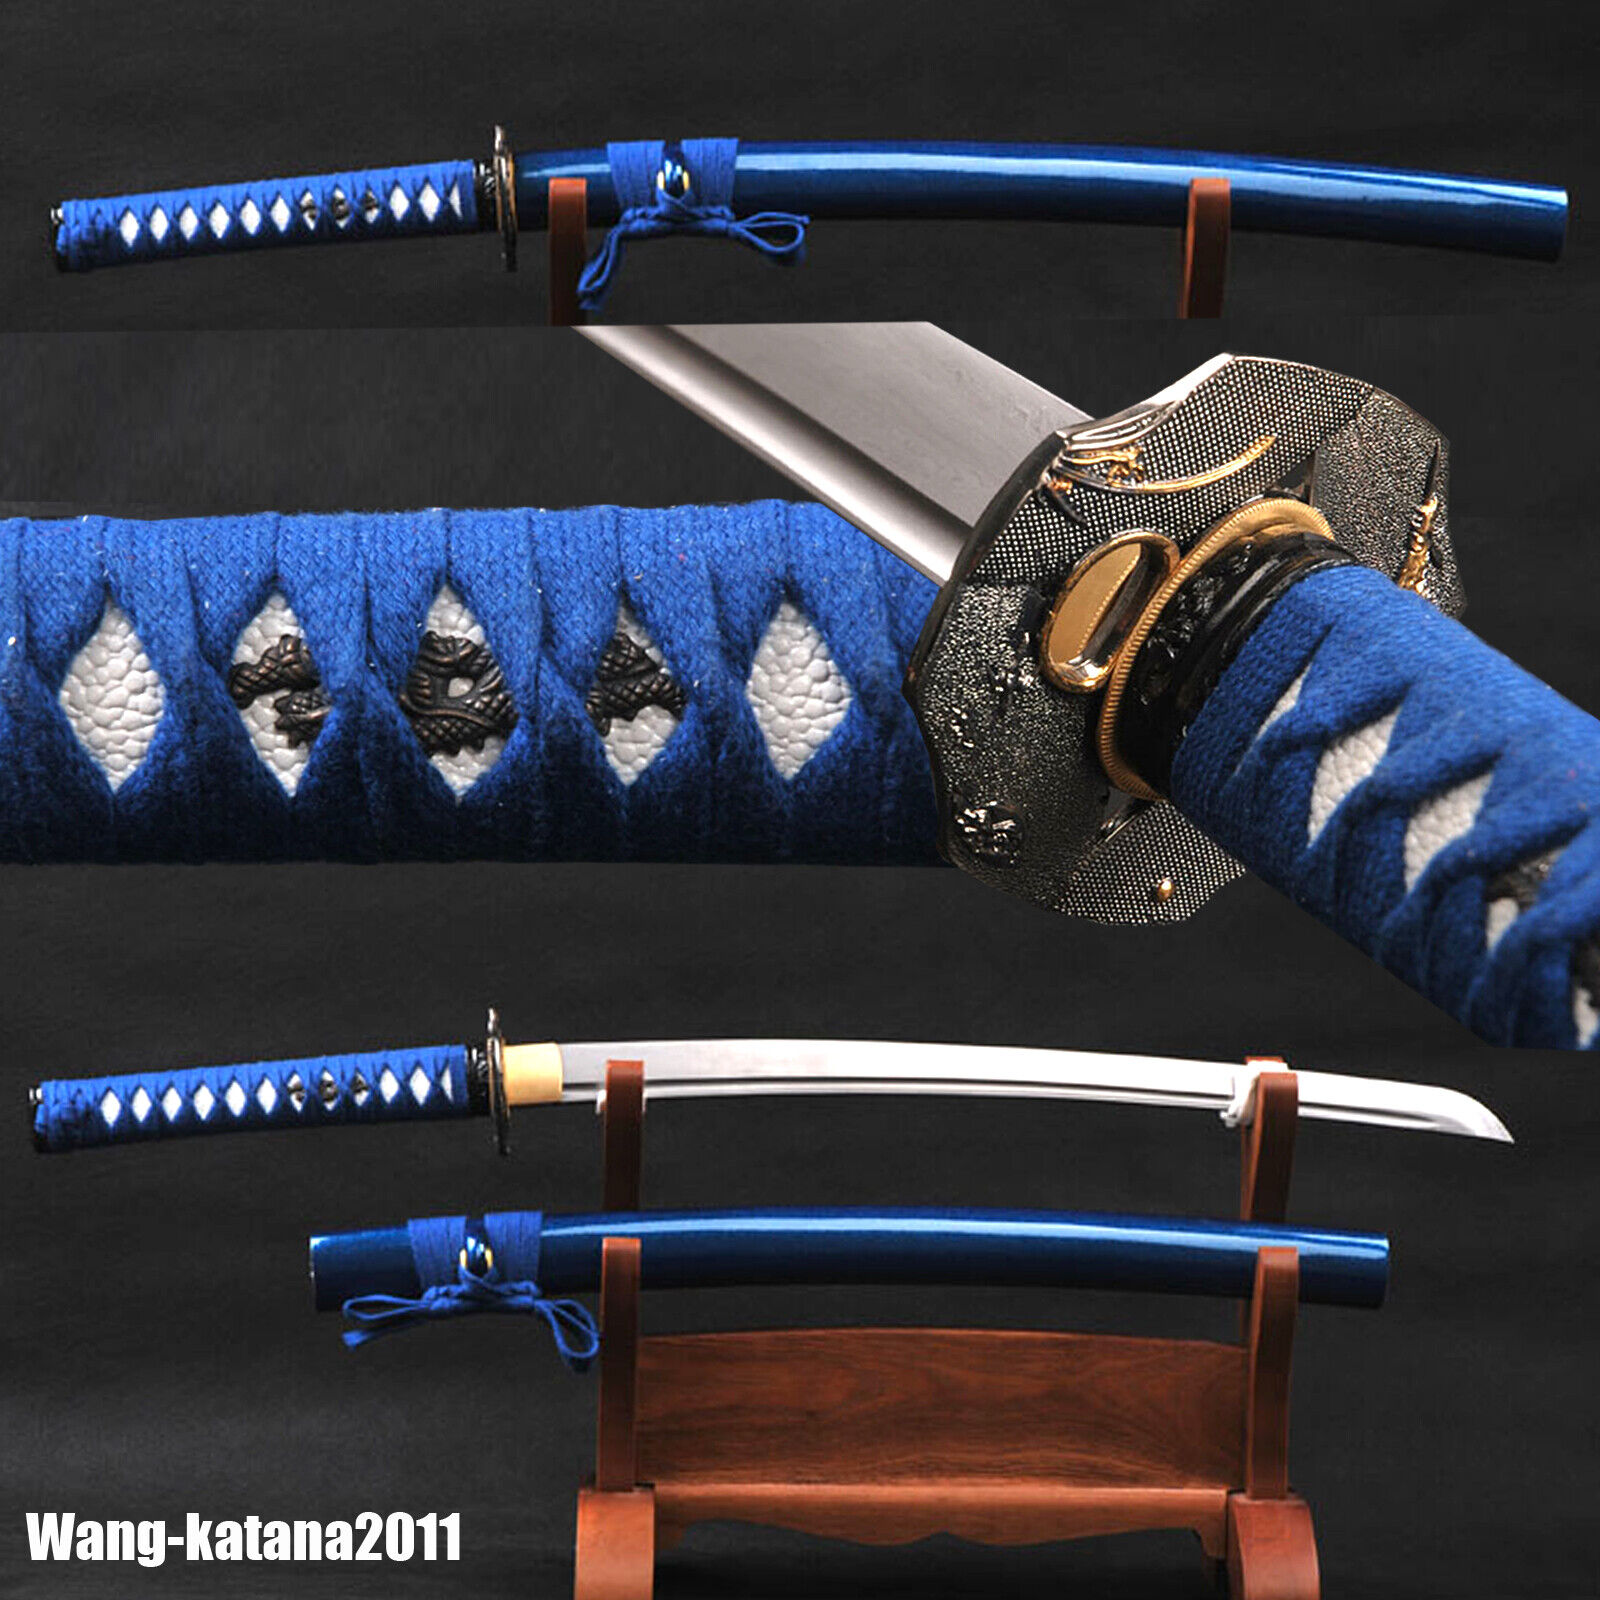 30'Blue Wakizashi Damascus Folded 1095 Combat Ready Sharp Japanese Samurai Sword